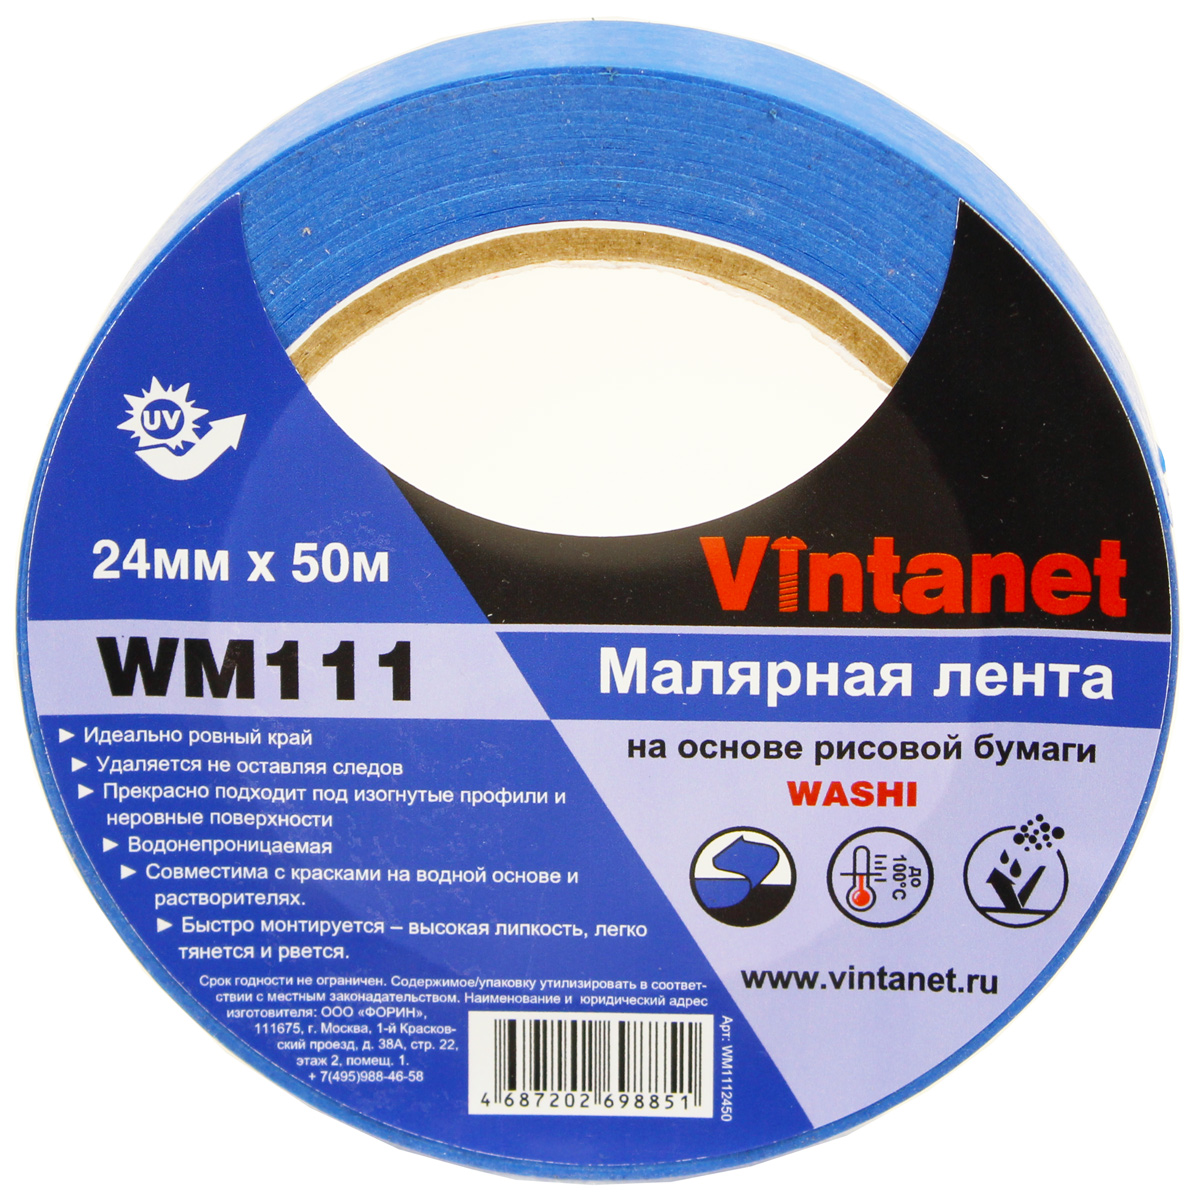 Лента малярная на основе рисовой бумаги Washi, Vintanet WM111, 24мм х 50м, WM1112450